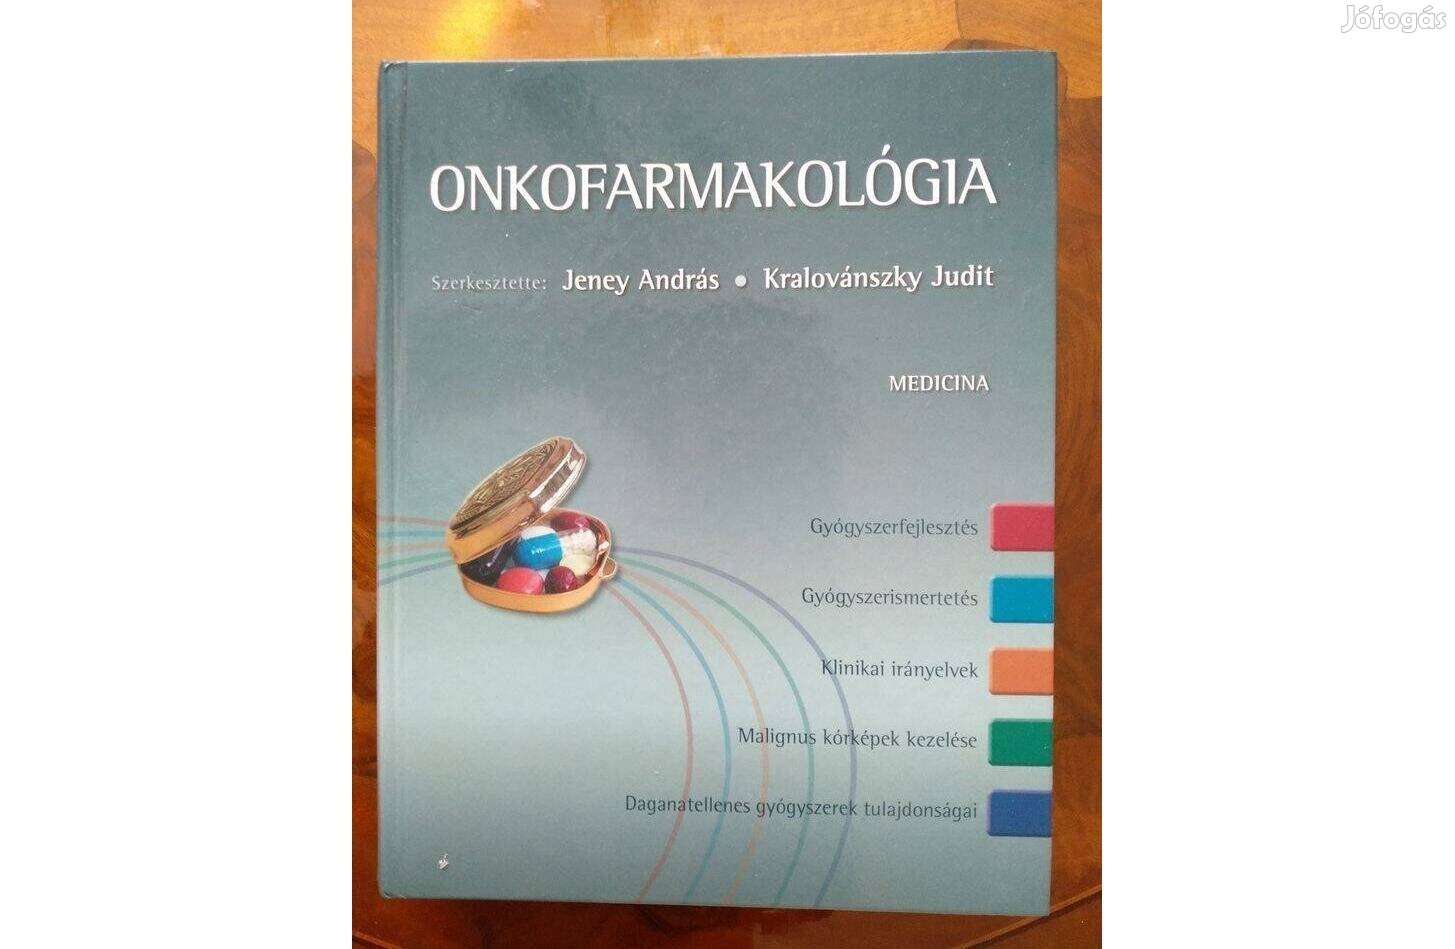 Onkofarmakológia Jeney András Kralovánszky Judit, könyv szinte féláron